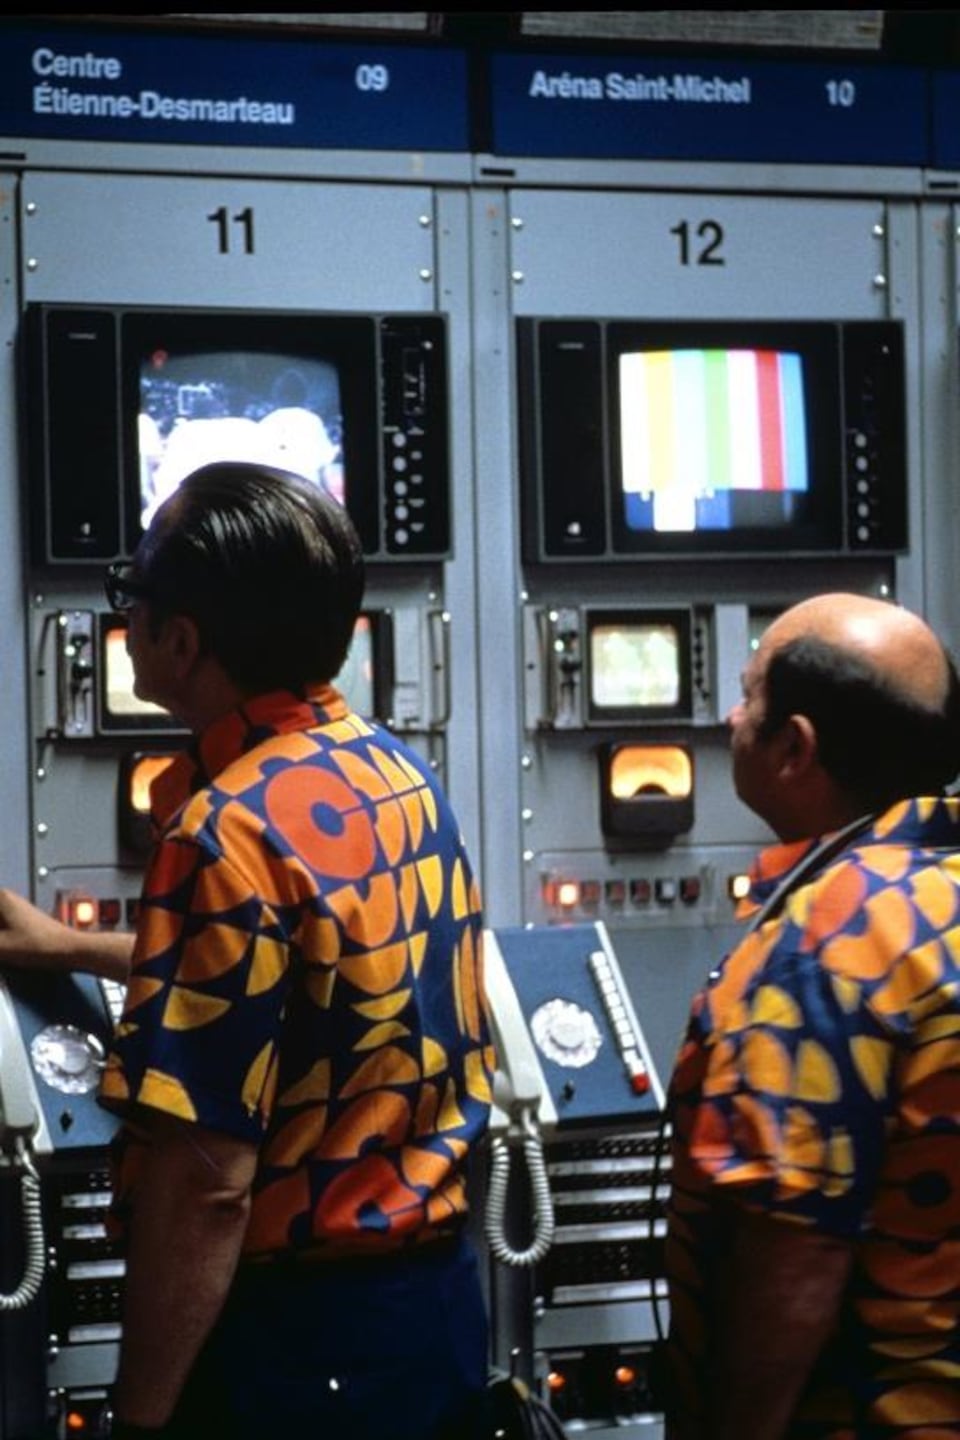 Deux techniciens portant la chemise officielle de l'ORTO regardent des moniteurs dans le centre de régie technique.